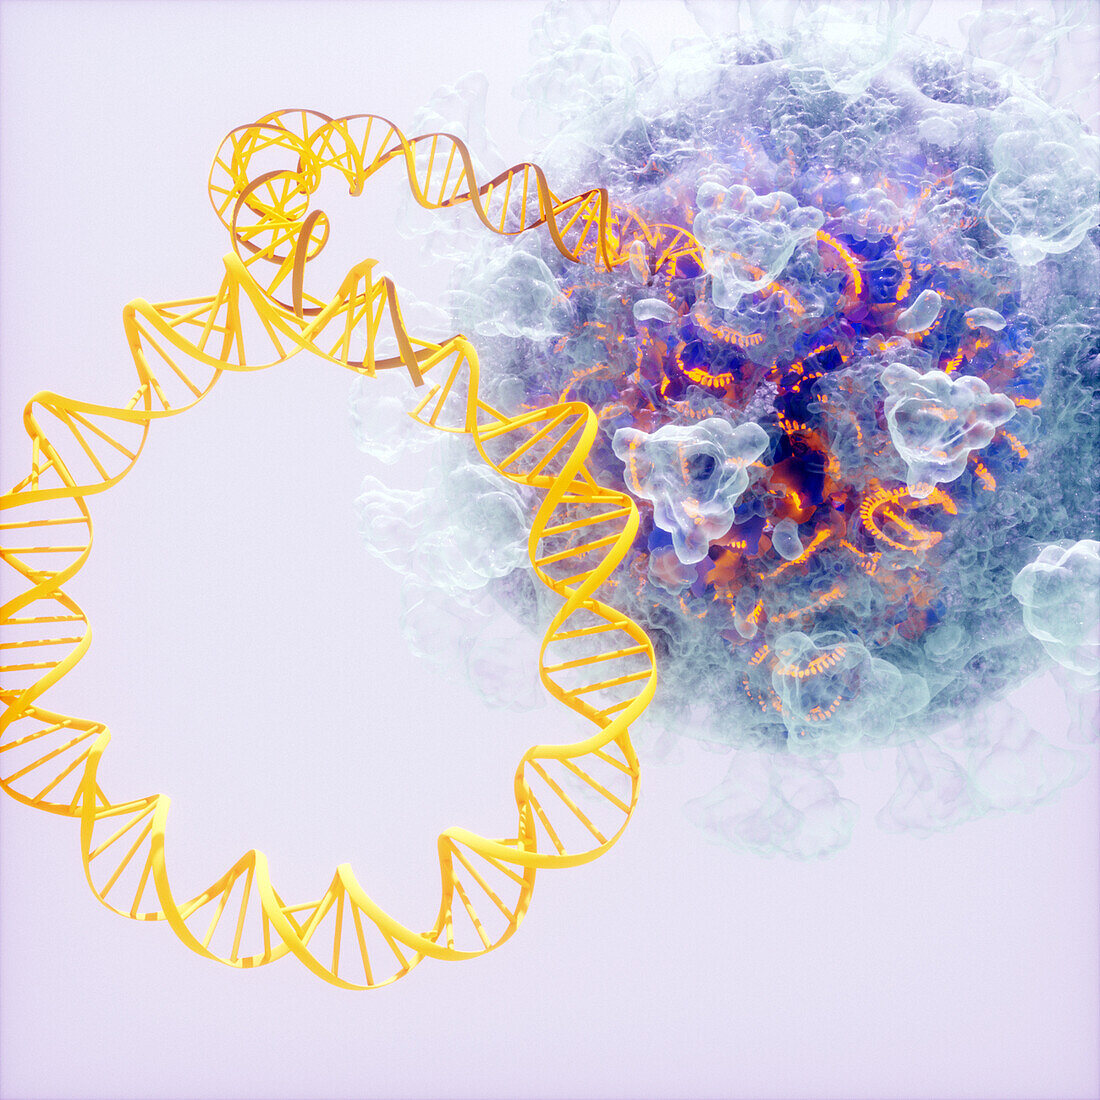 DNA vaccine, conceptual illustration